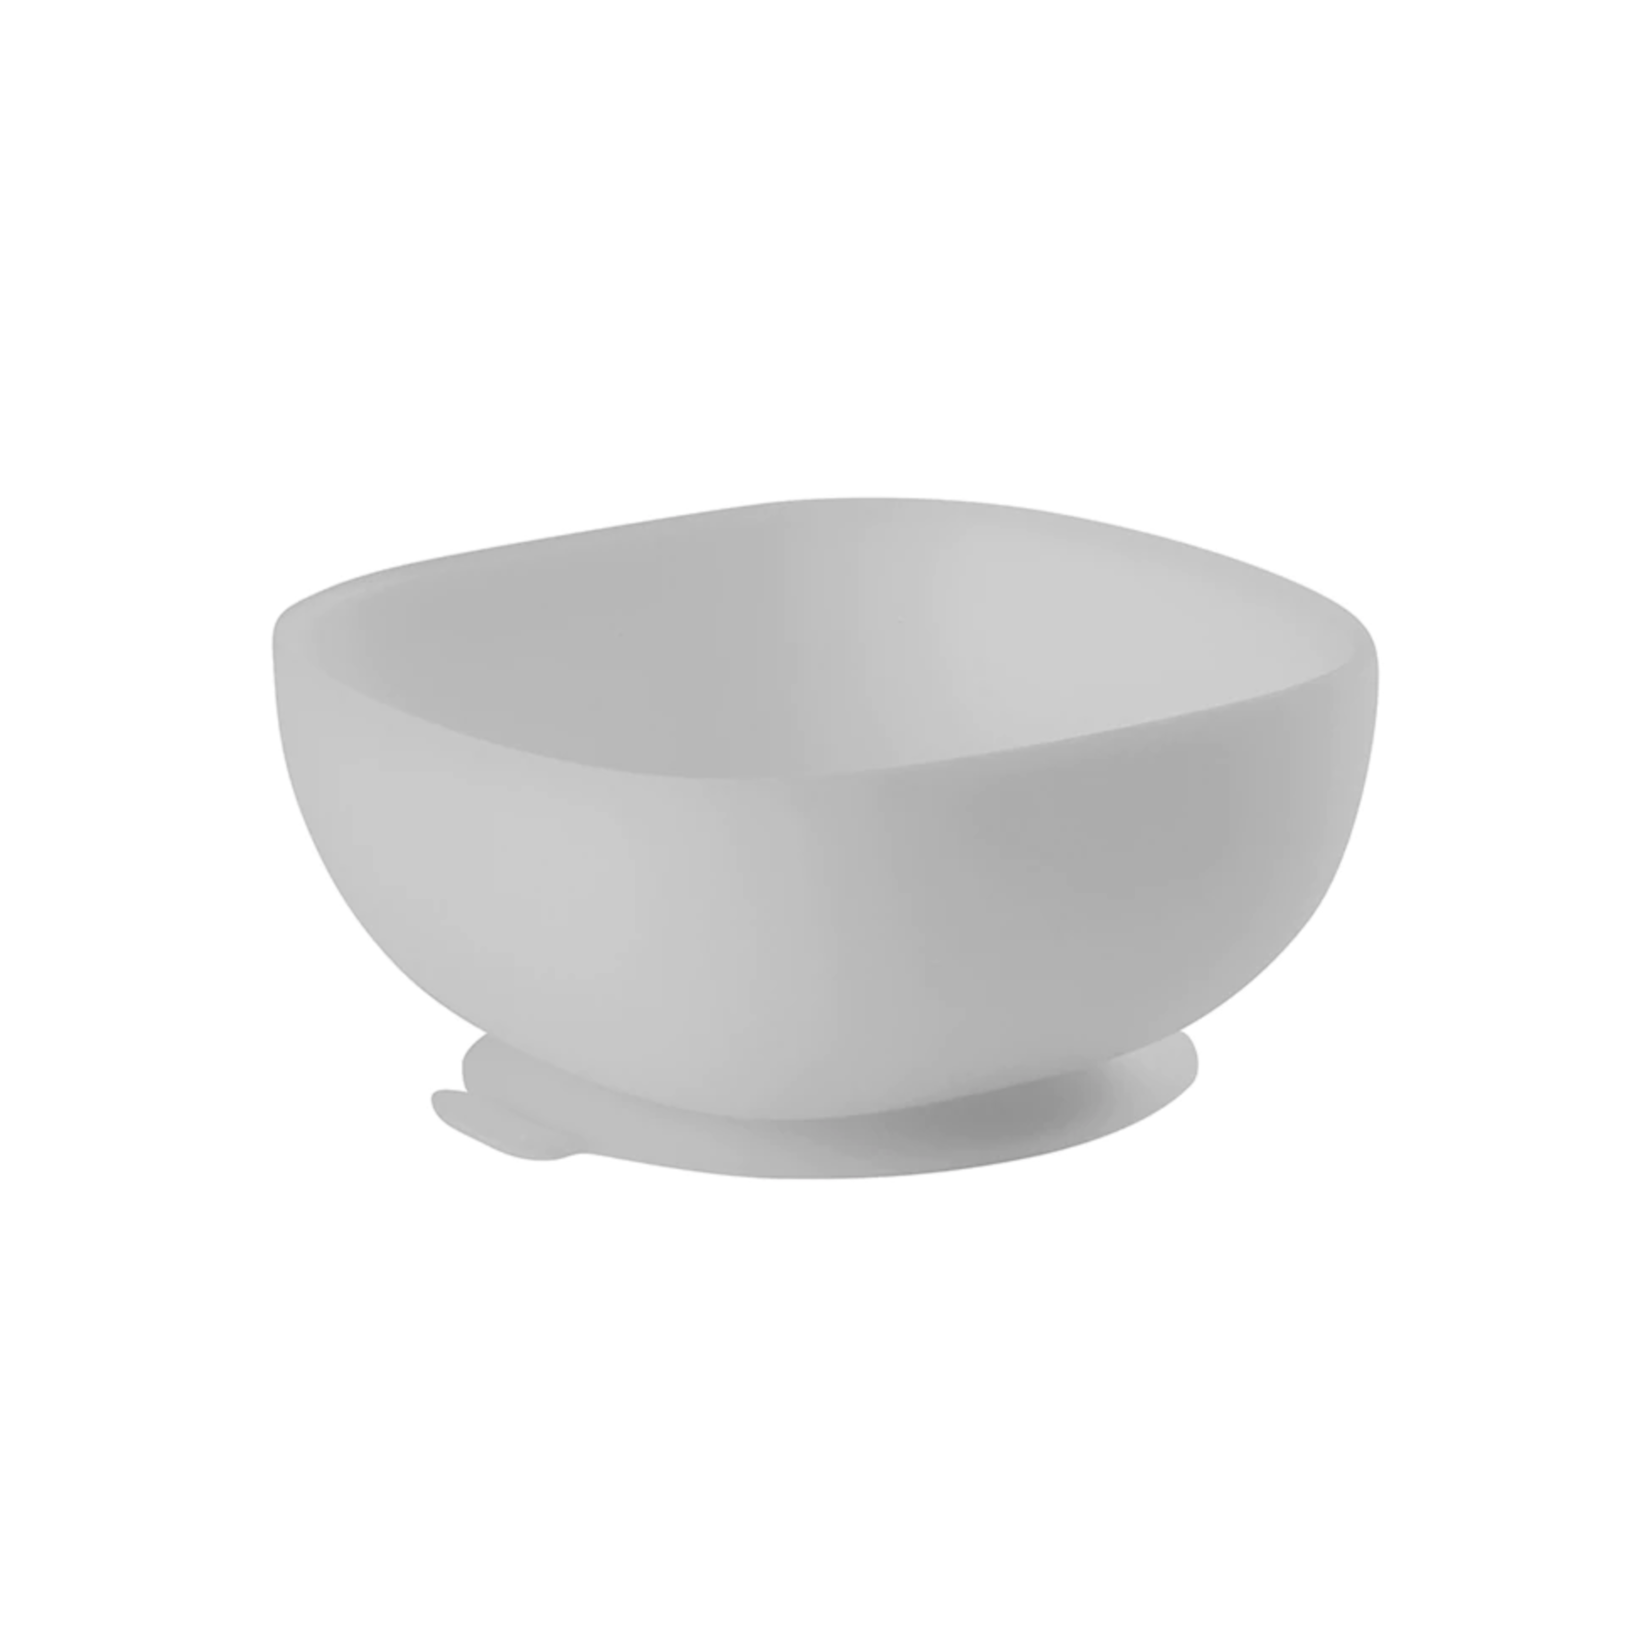 BEABA Silicone Suction Bowl - Grey